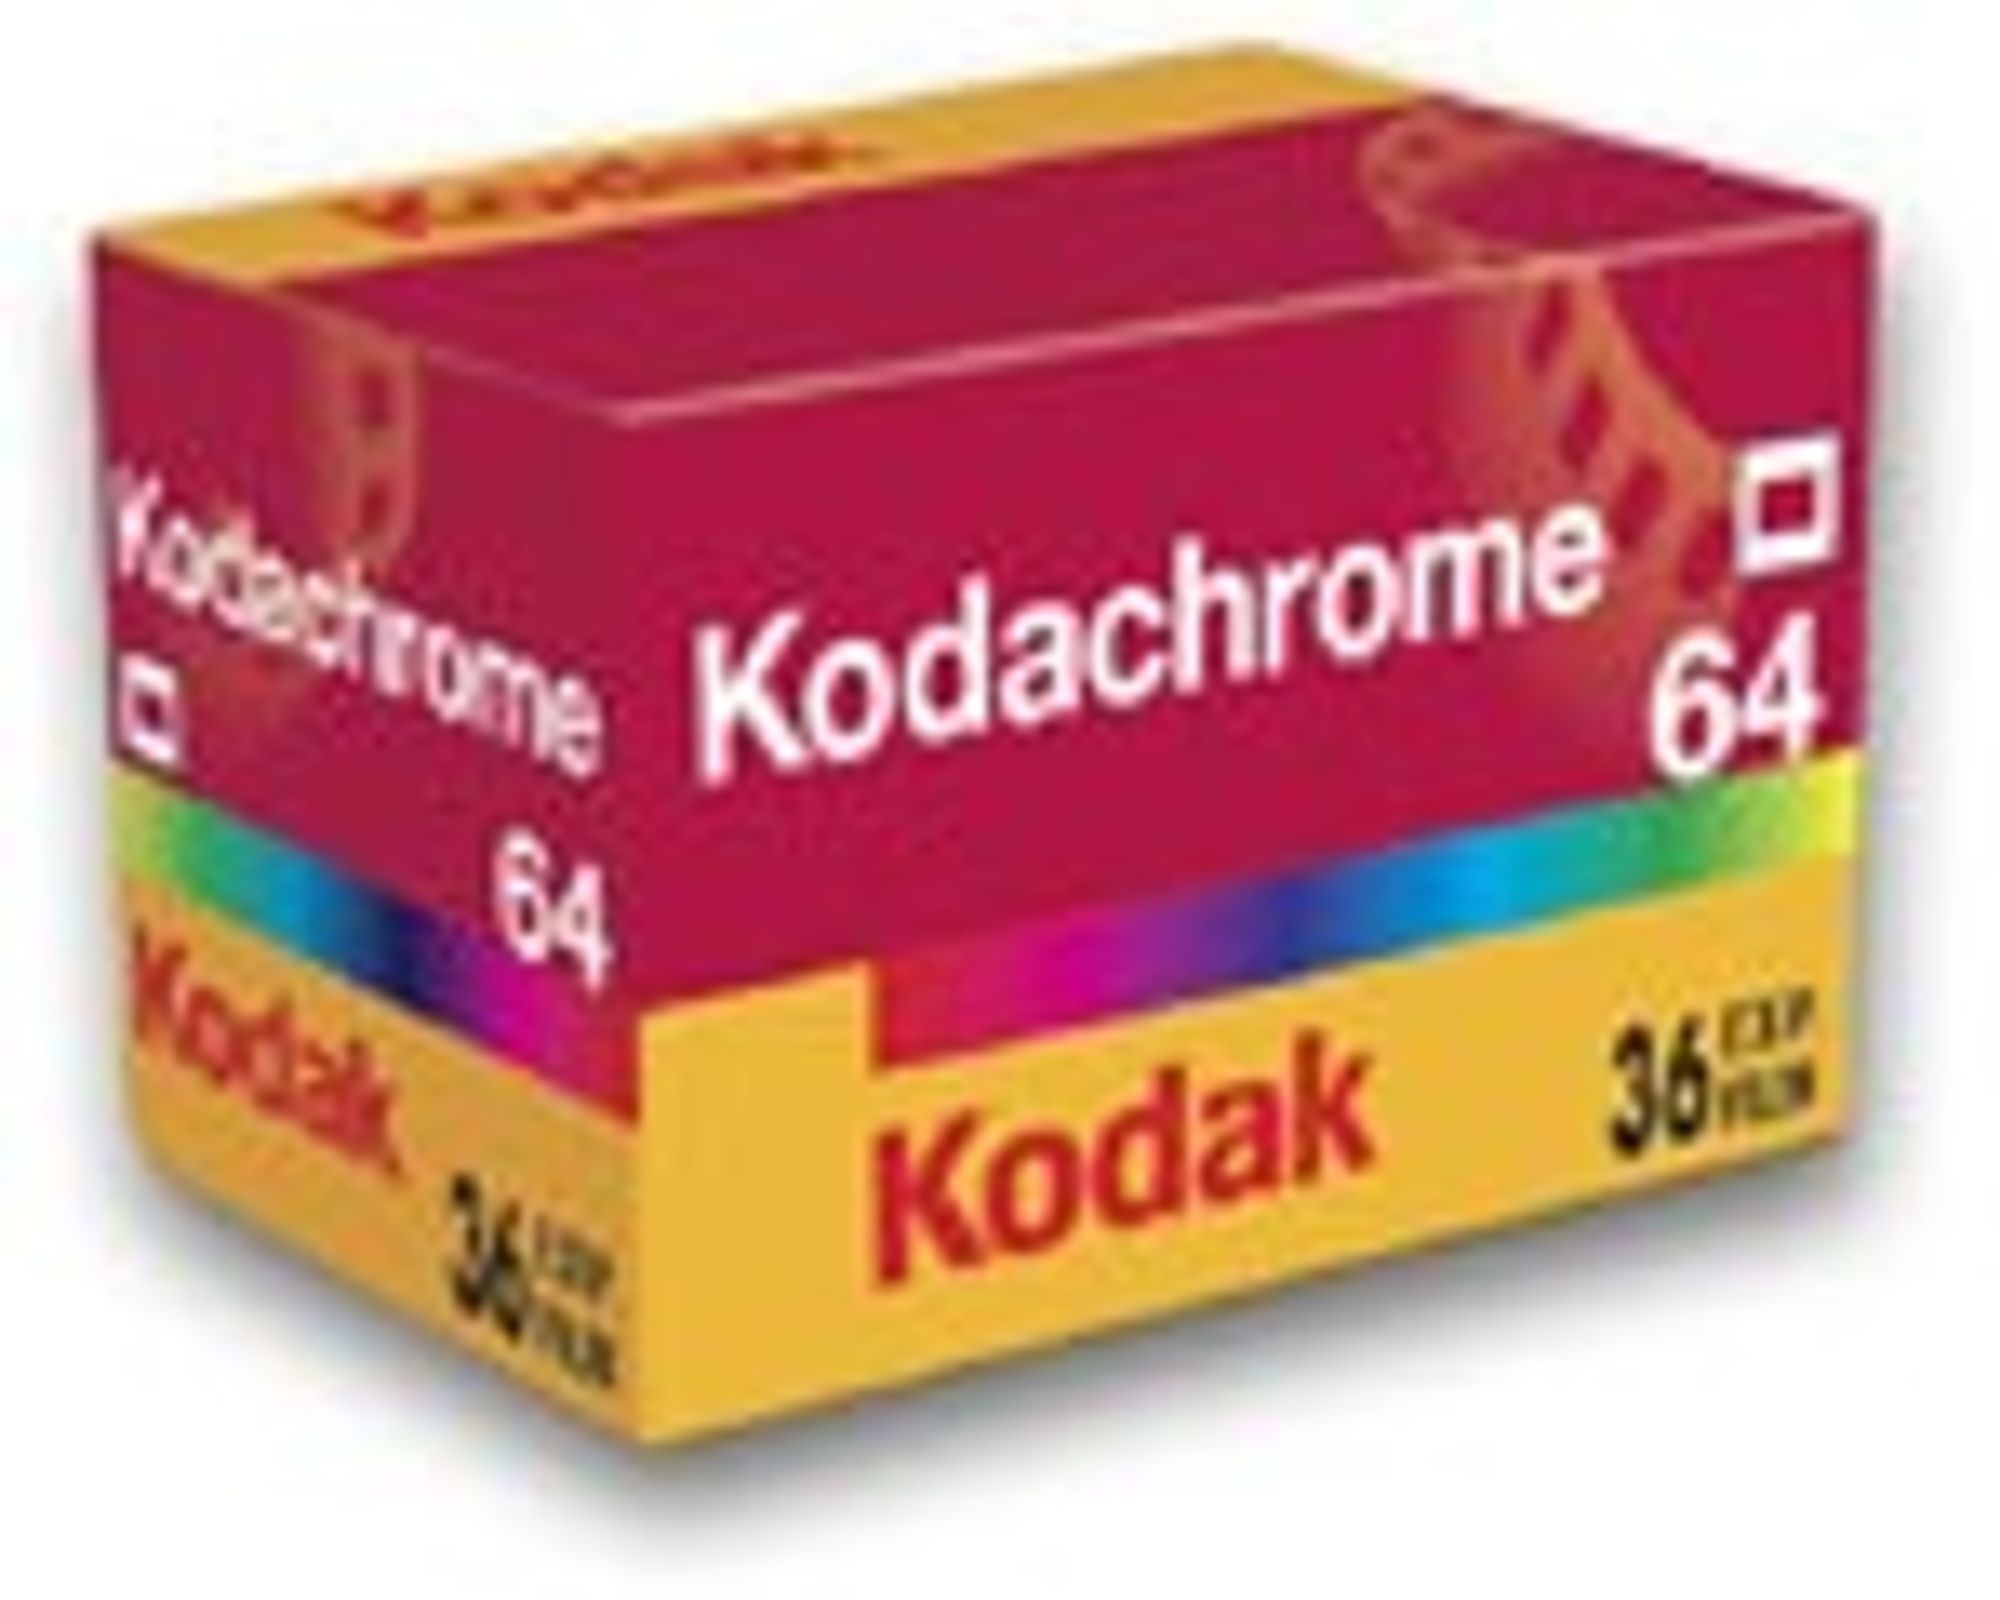 Tiden løper snart ut for Kodachrome.